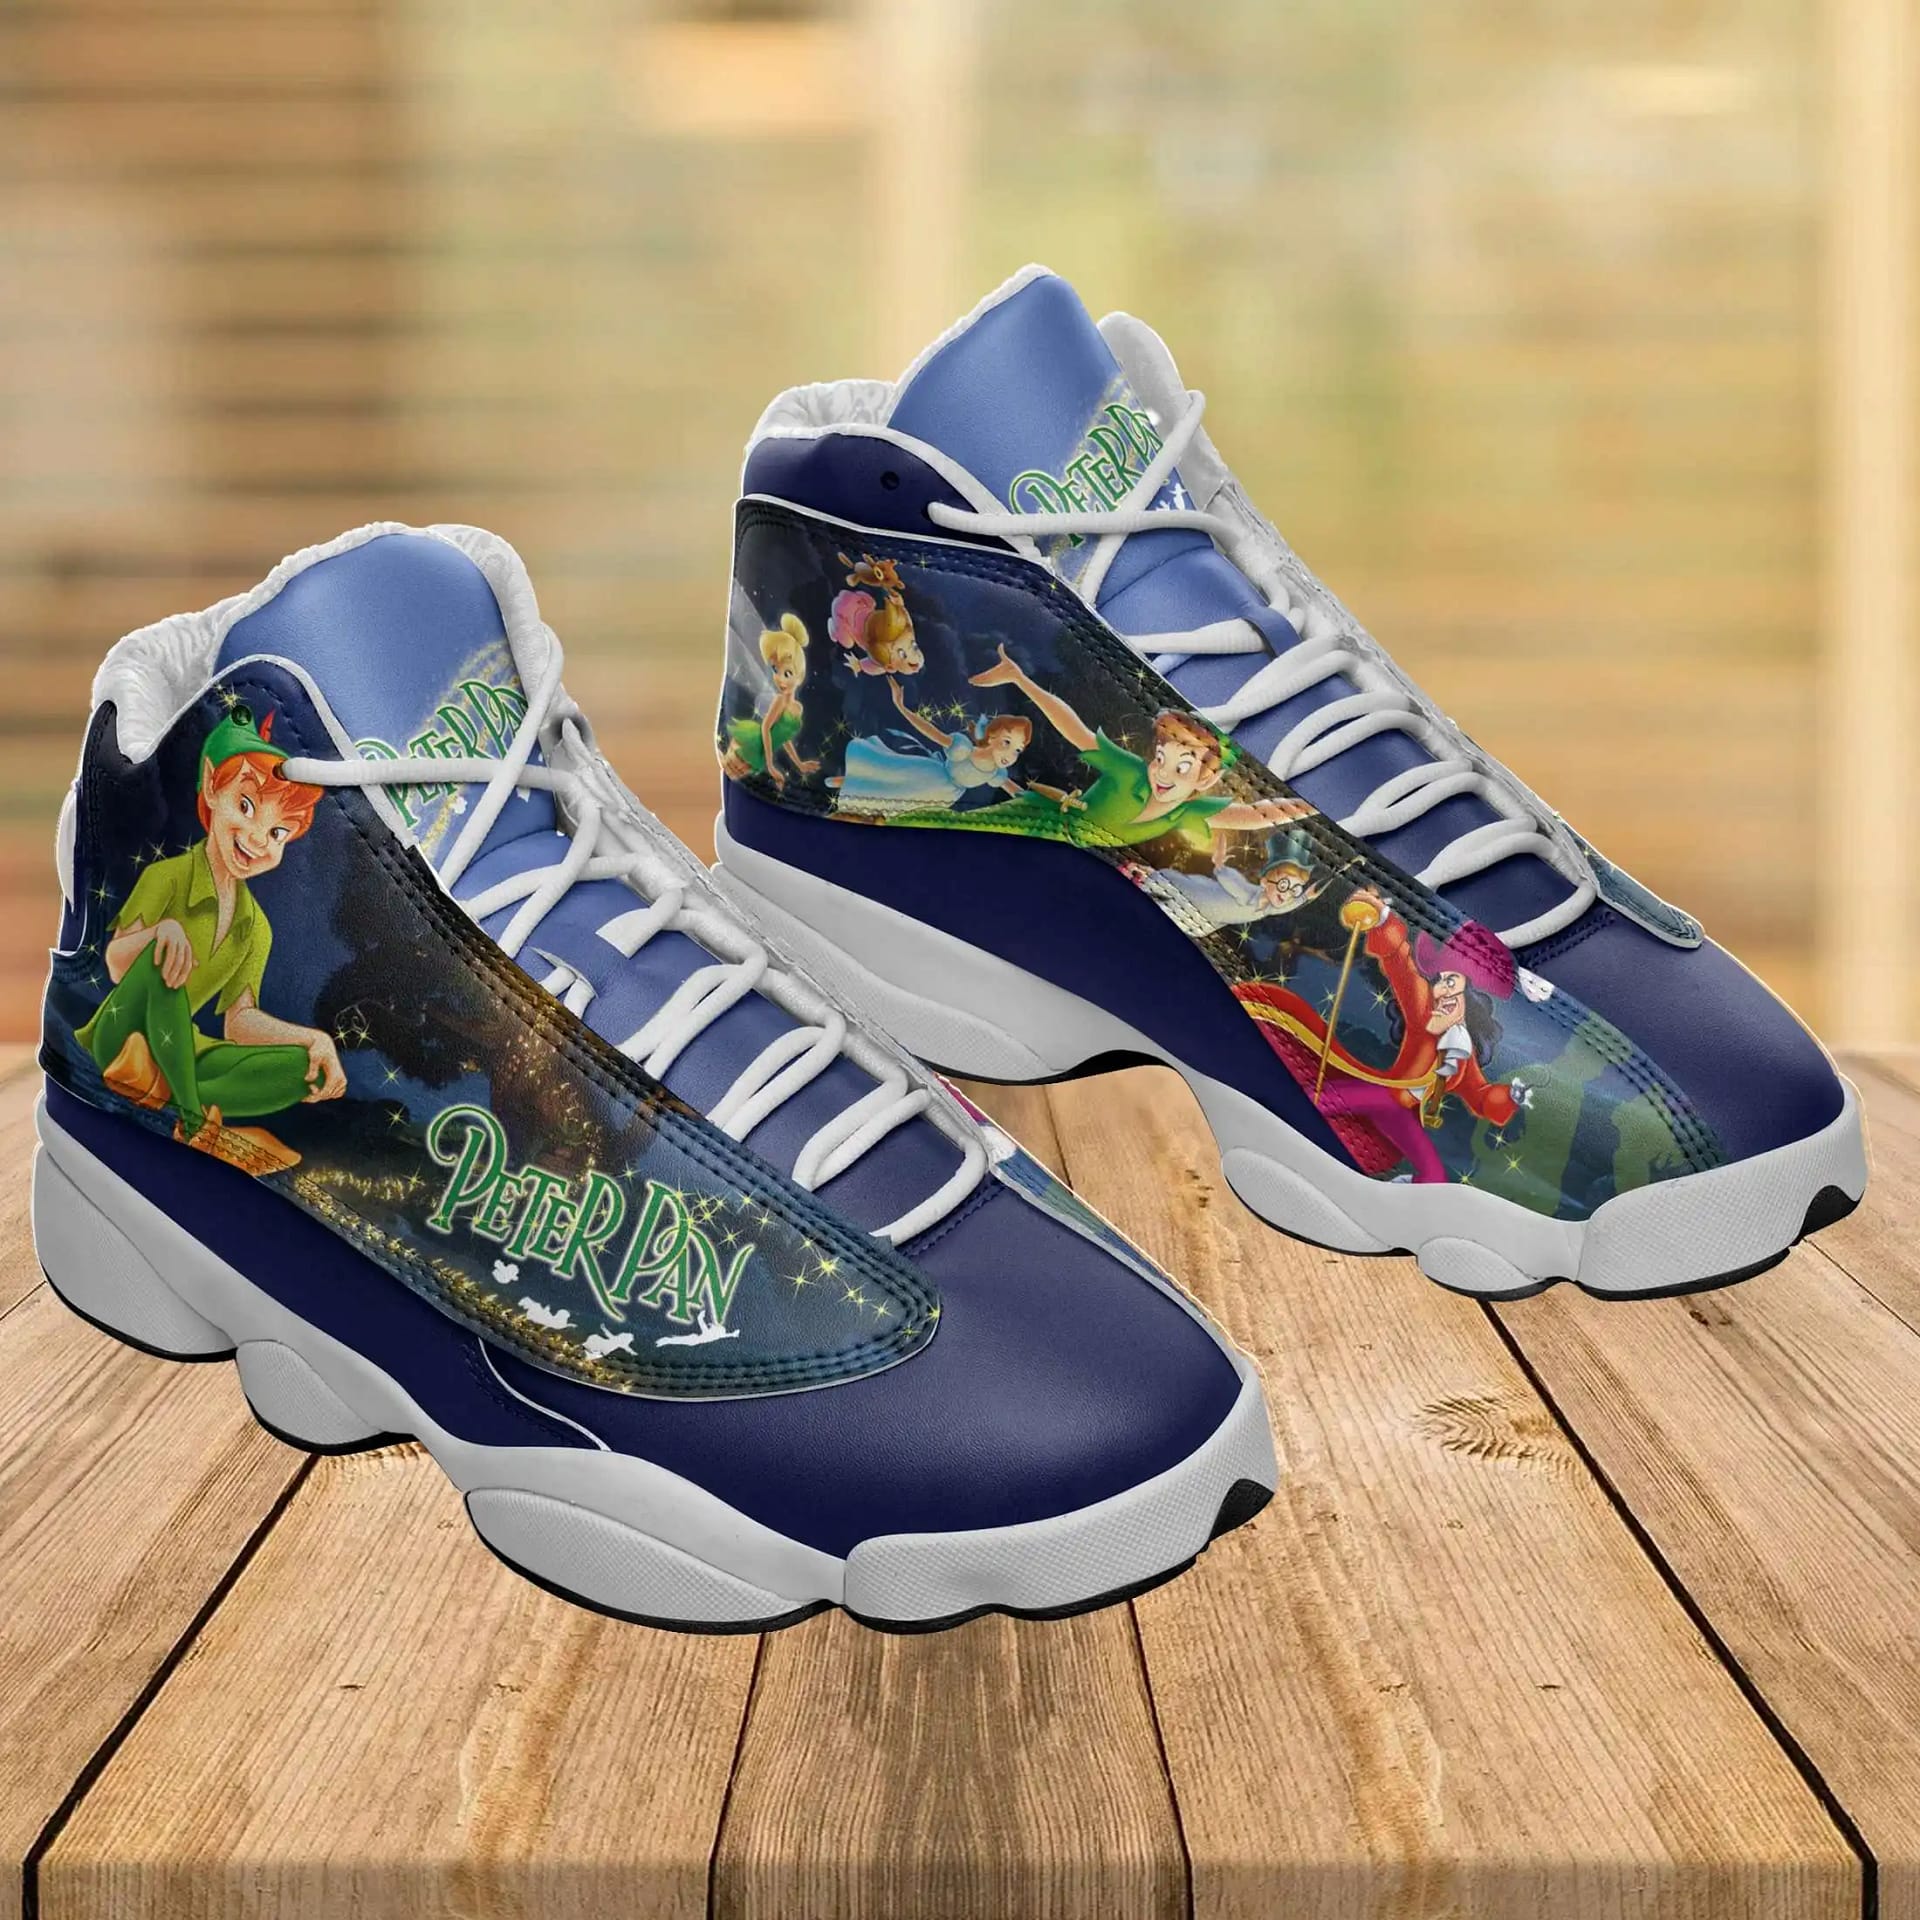 Disney Peter Pan Air Jordan Shoes